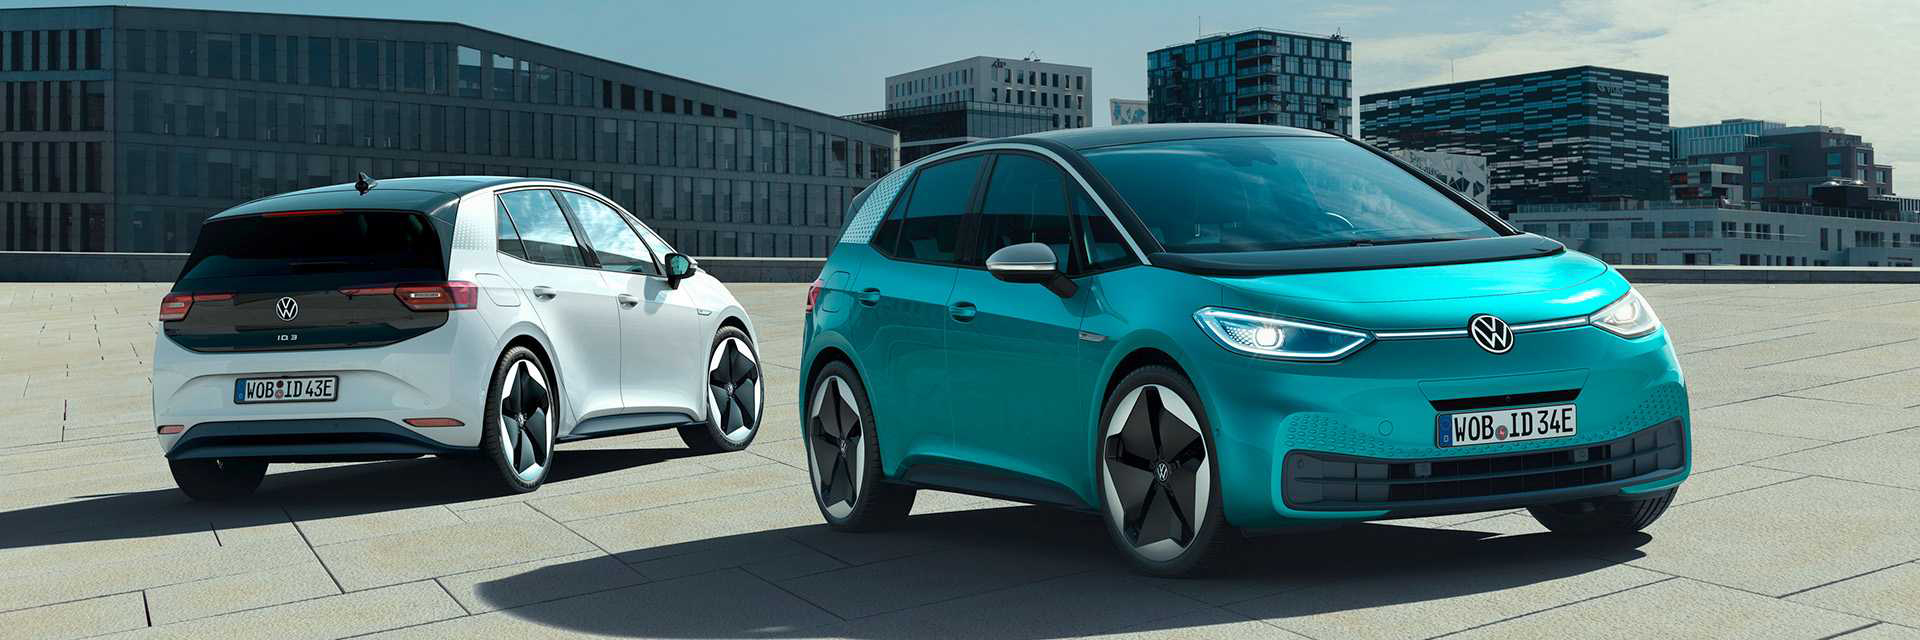 Volkswagen ID3, carros novos, carros km0, carros serviço, carros usados